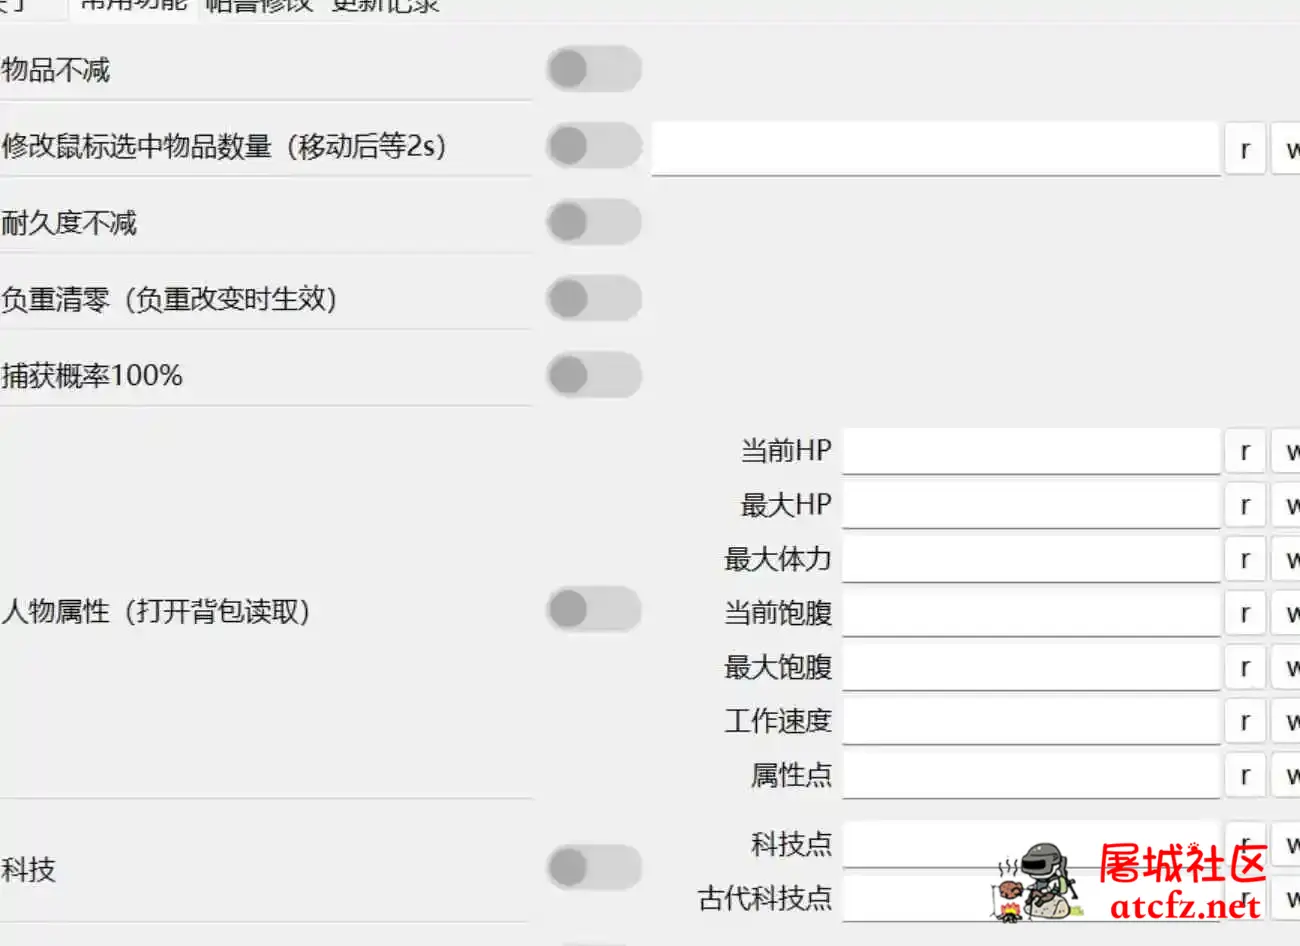 网友自制幻兽帕鲁修改器0.2.2.1中文版 屠城辅助网www.tcfz1.com8885